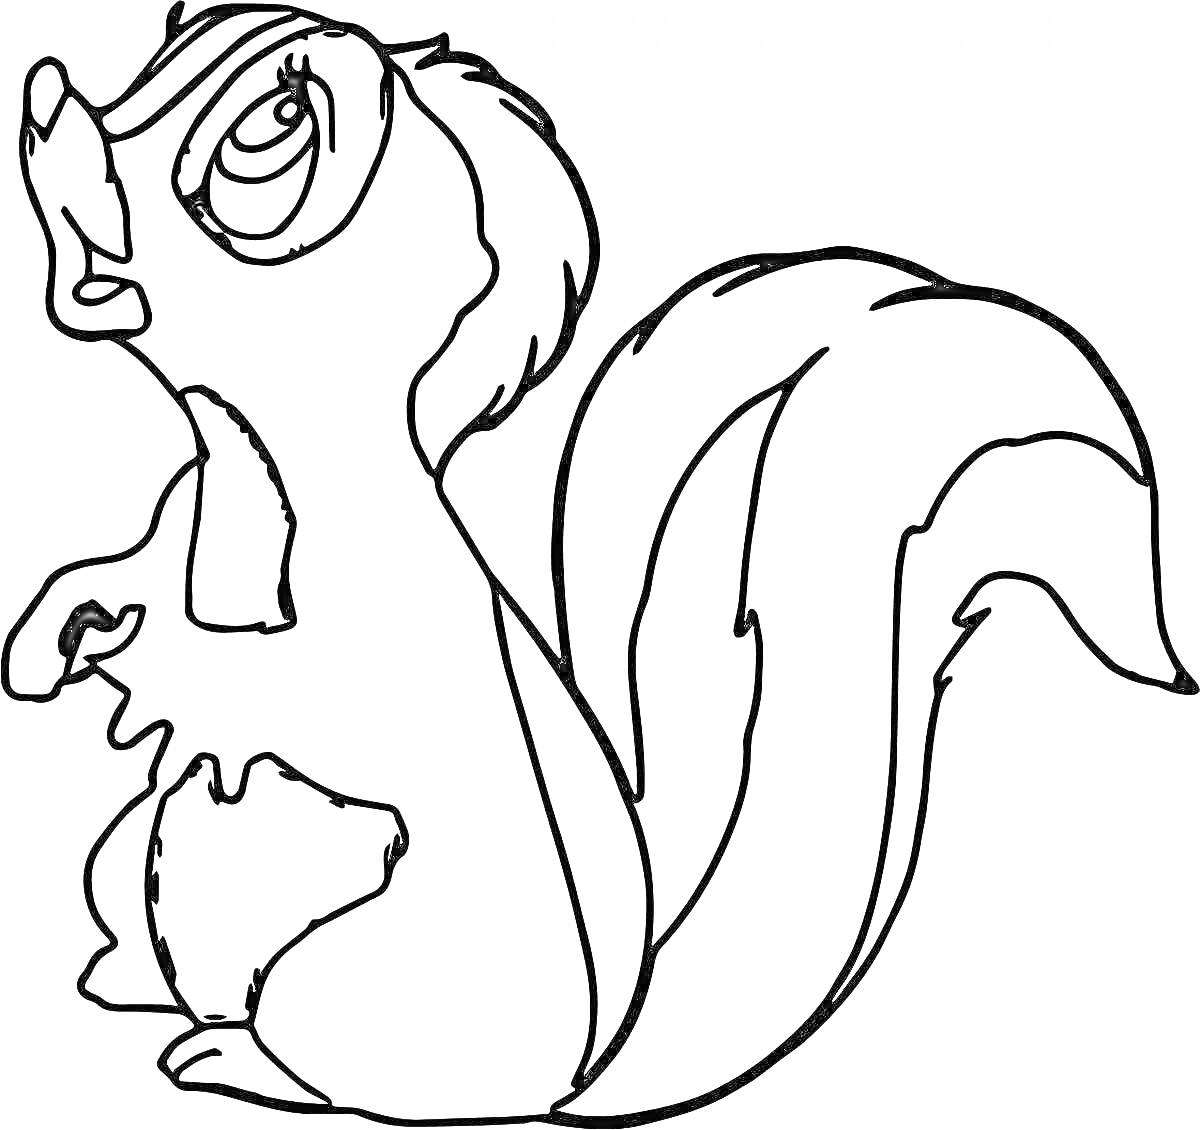 Раскраска Скунс с поднятым хвостом и выразительными глазами